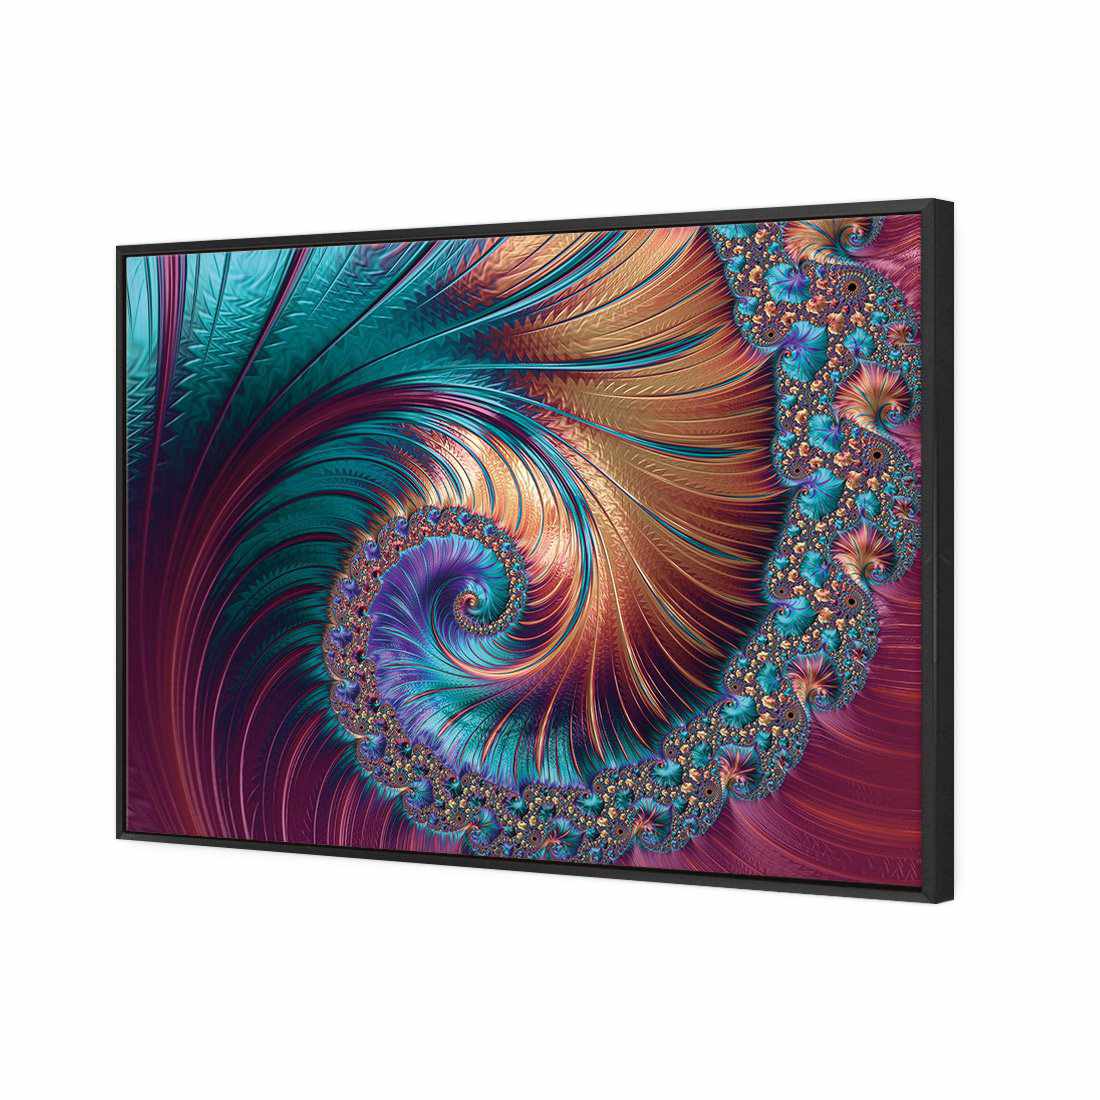 Luxe Spiral Canvas Art-Canvas-Wall Art Designs-45x30cm-Canvas - Black Frame-Wall Art Designs